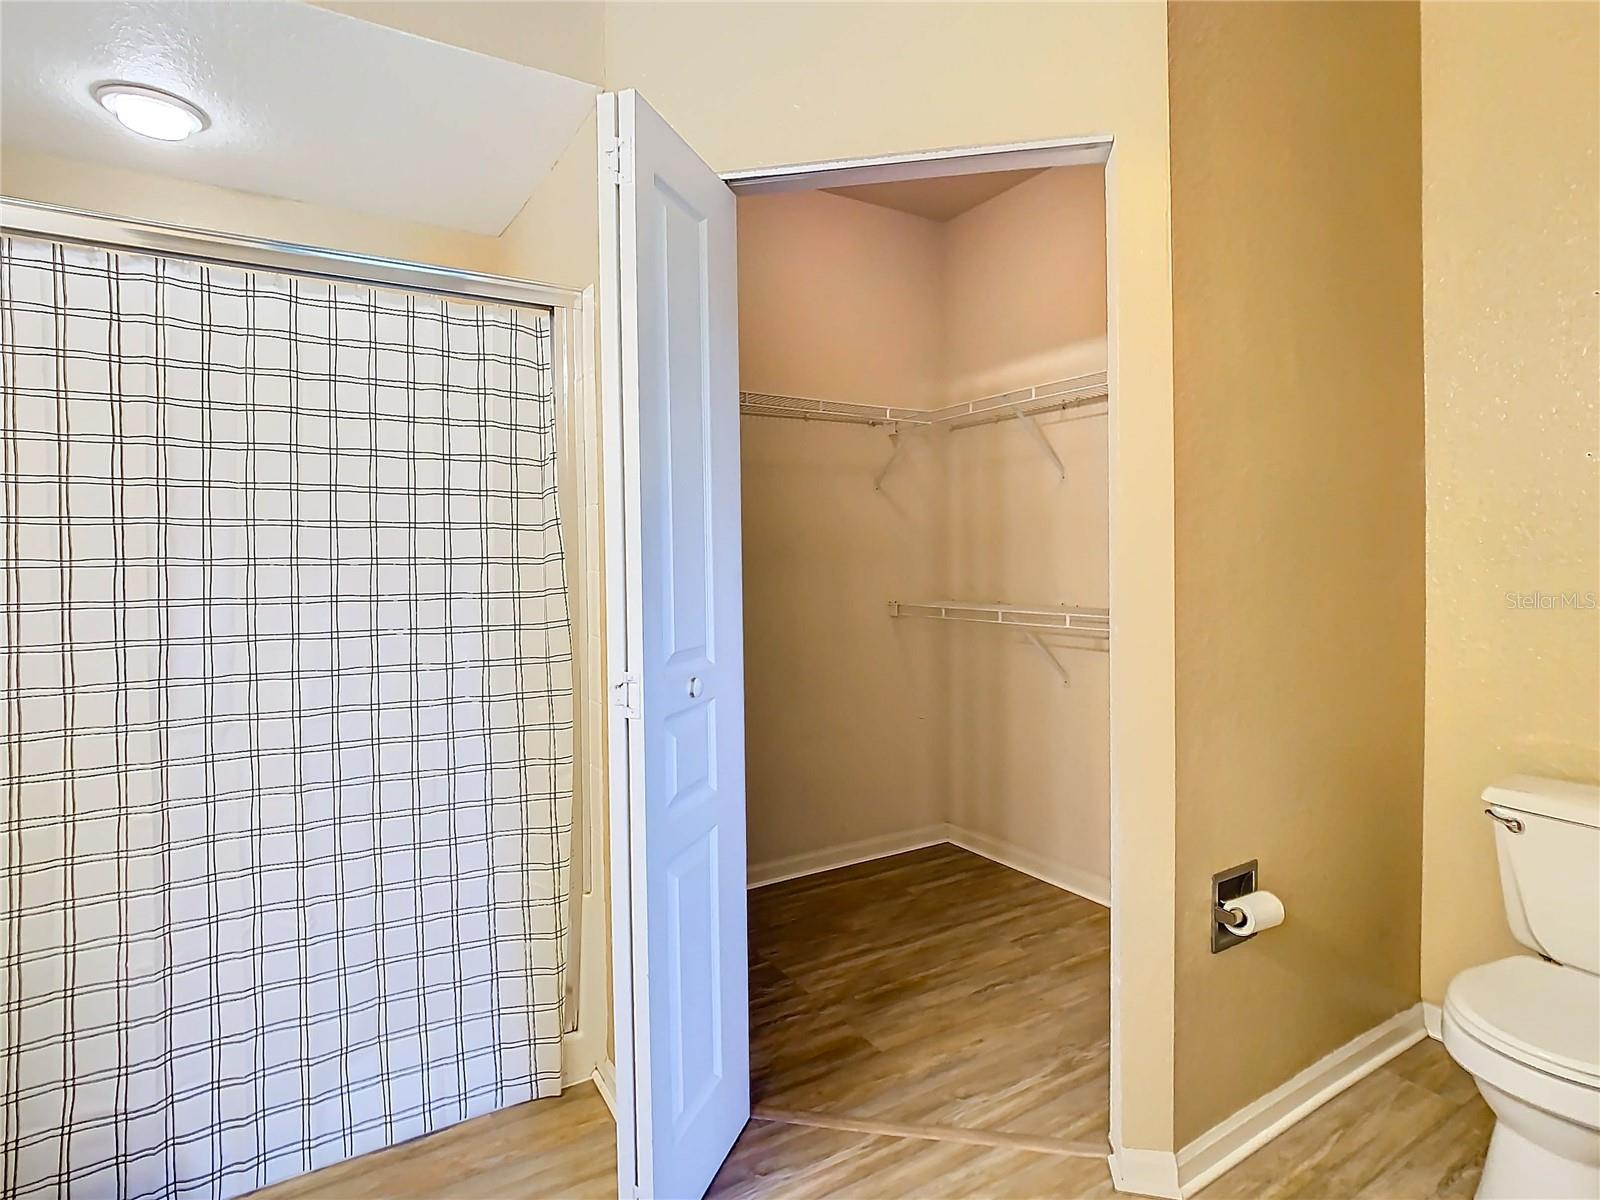 En-suite bath of primary bedroom with view of walk-in closet.